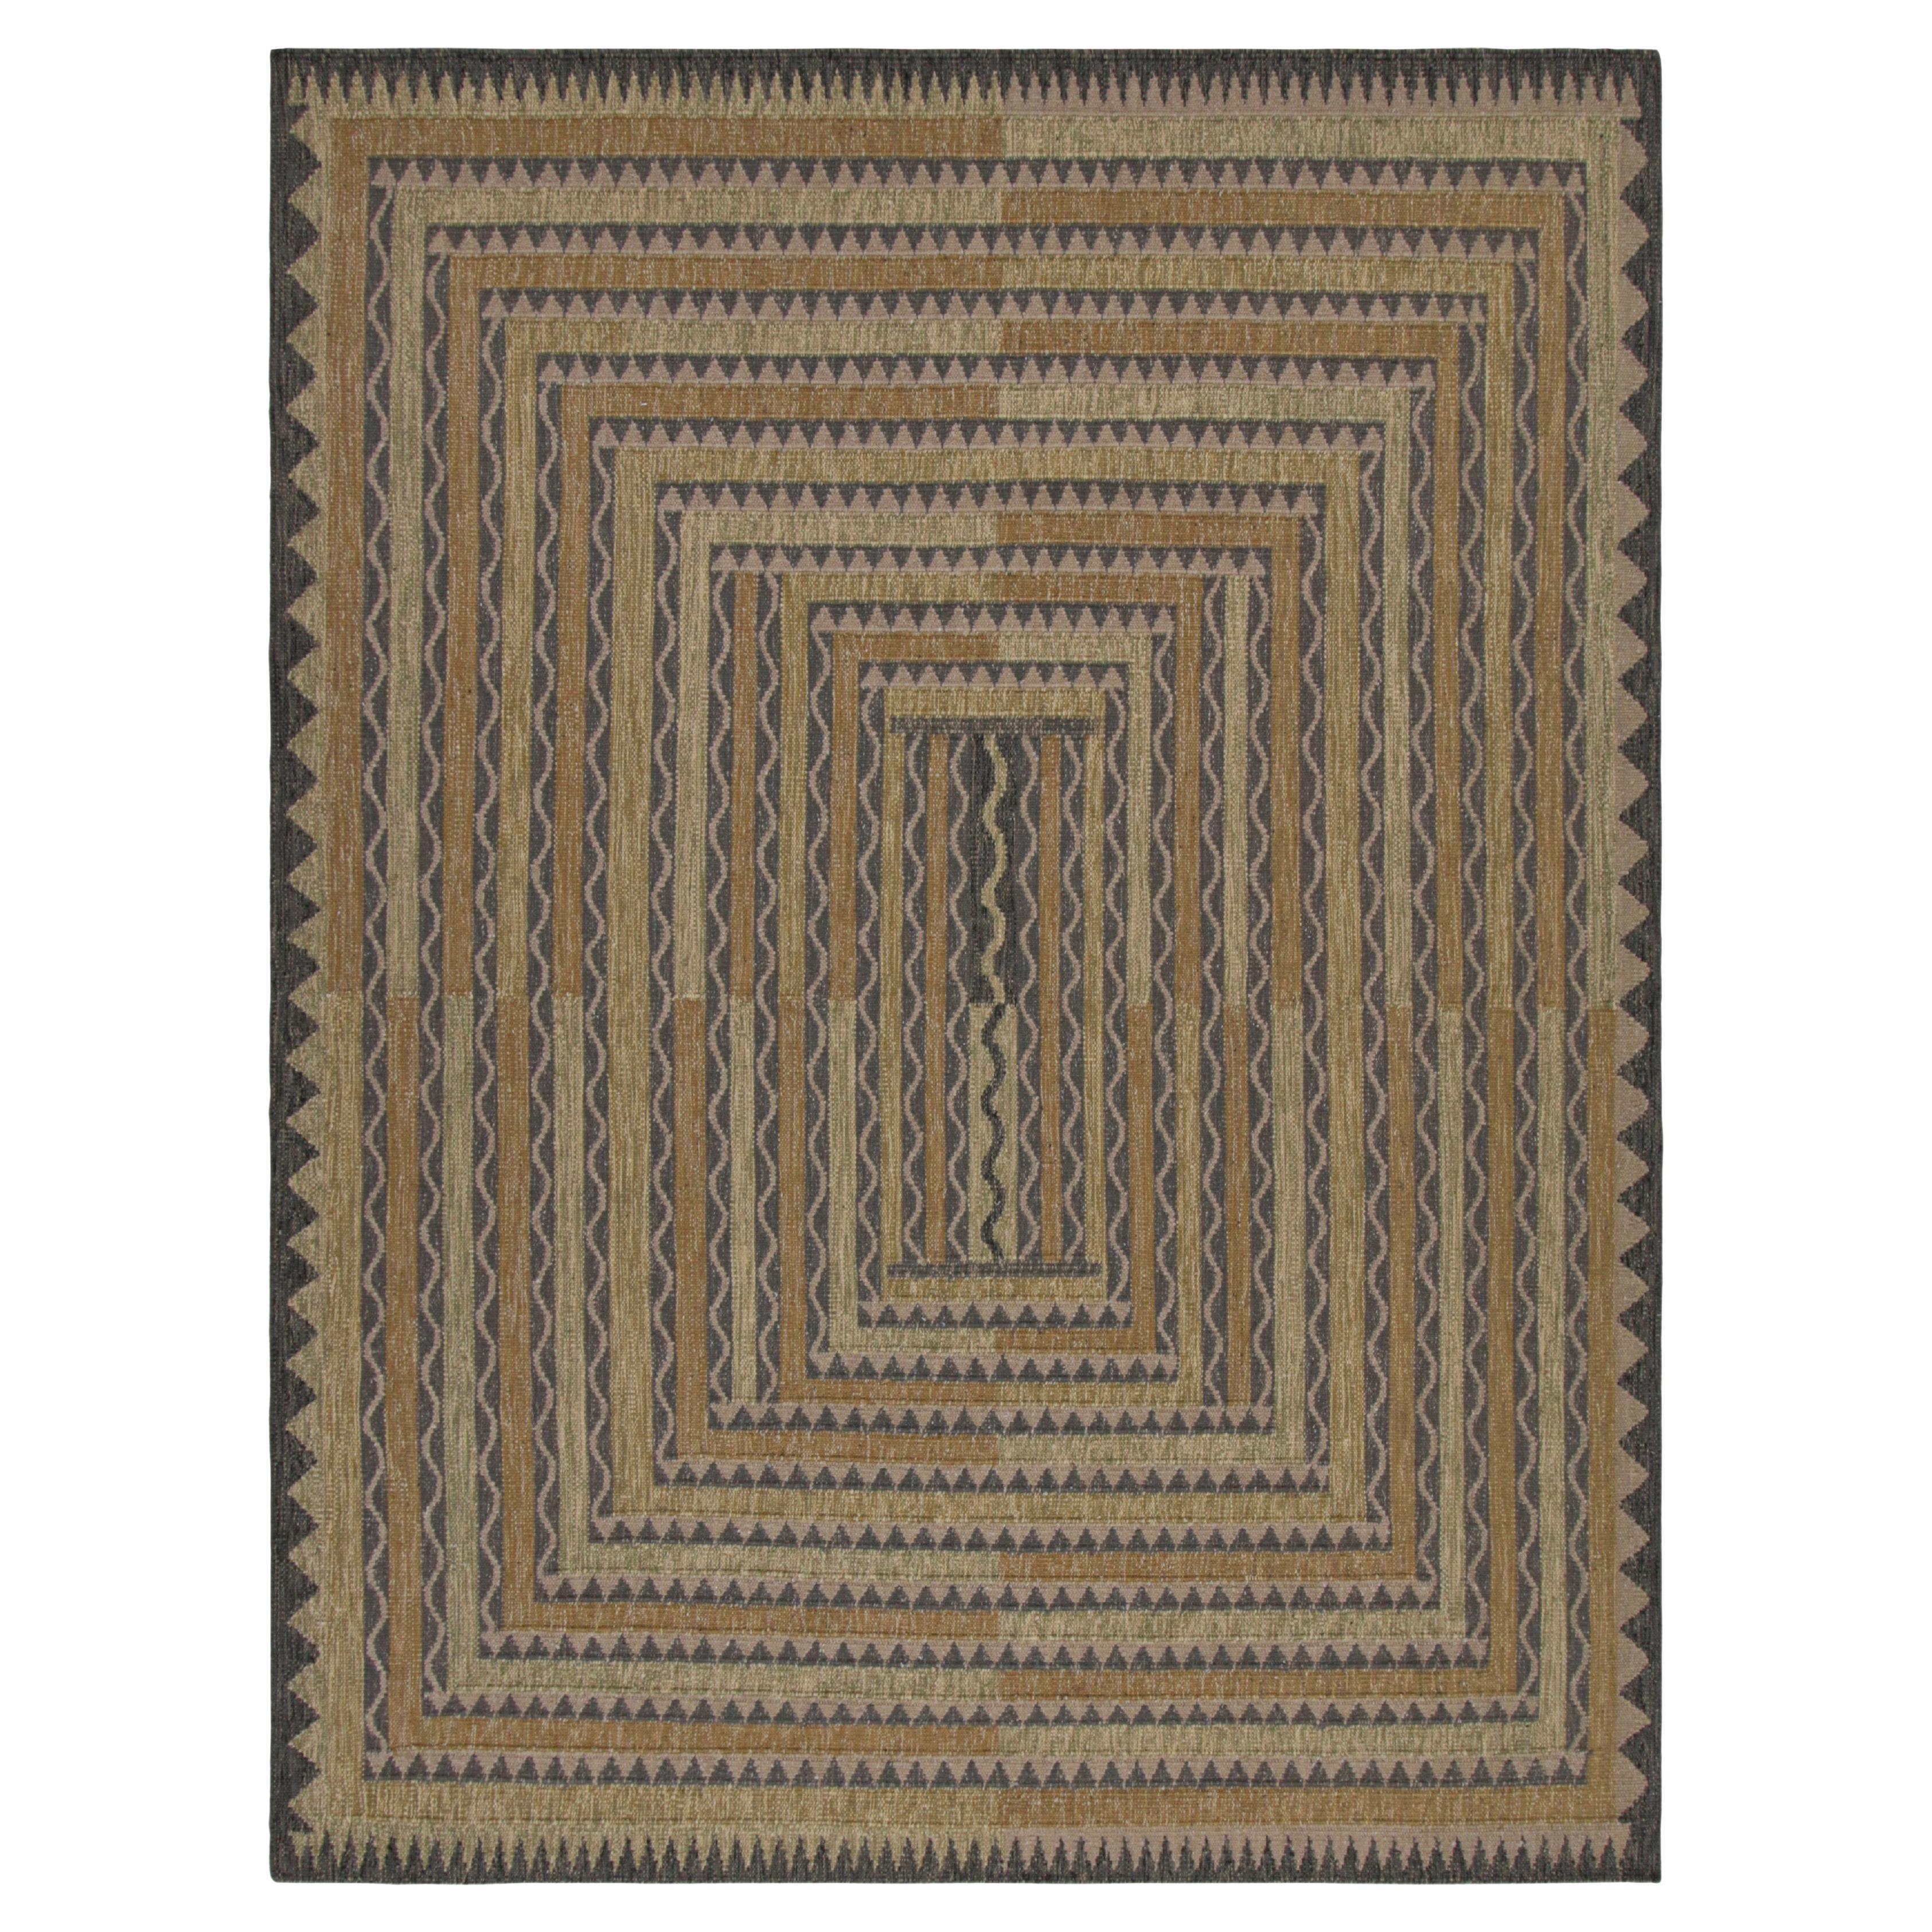 Tapis de style scandinave à motifs géométriques polychromes de Rug & Kilim